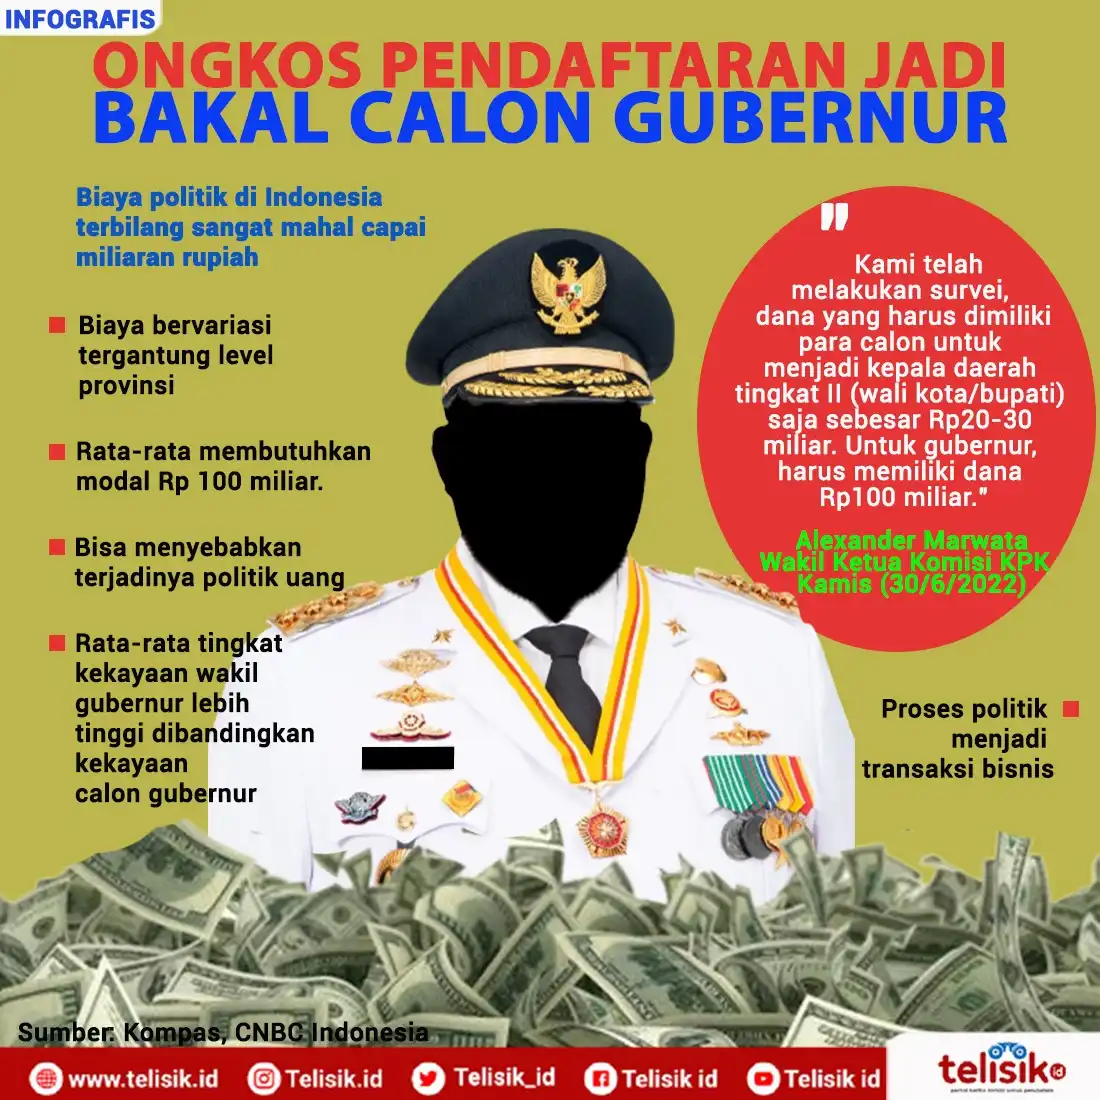 Infografis: Politik Indonesia Mahal, Ongkos Pendaftraan jadi Gubernur Rp 100 Miliar